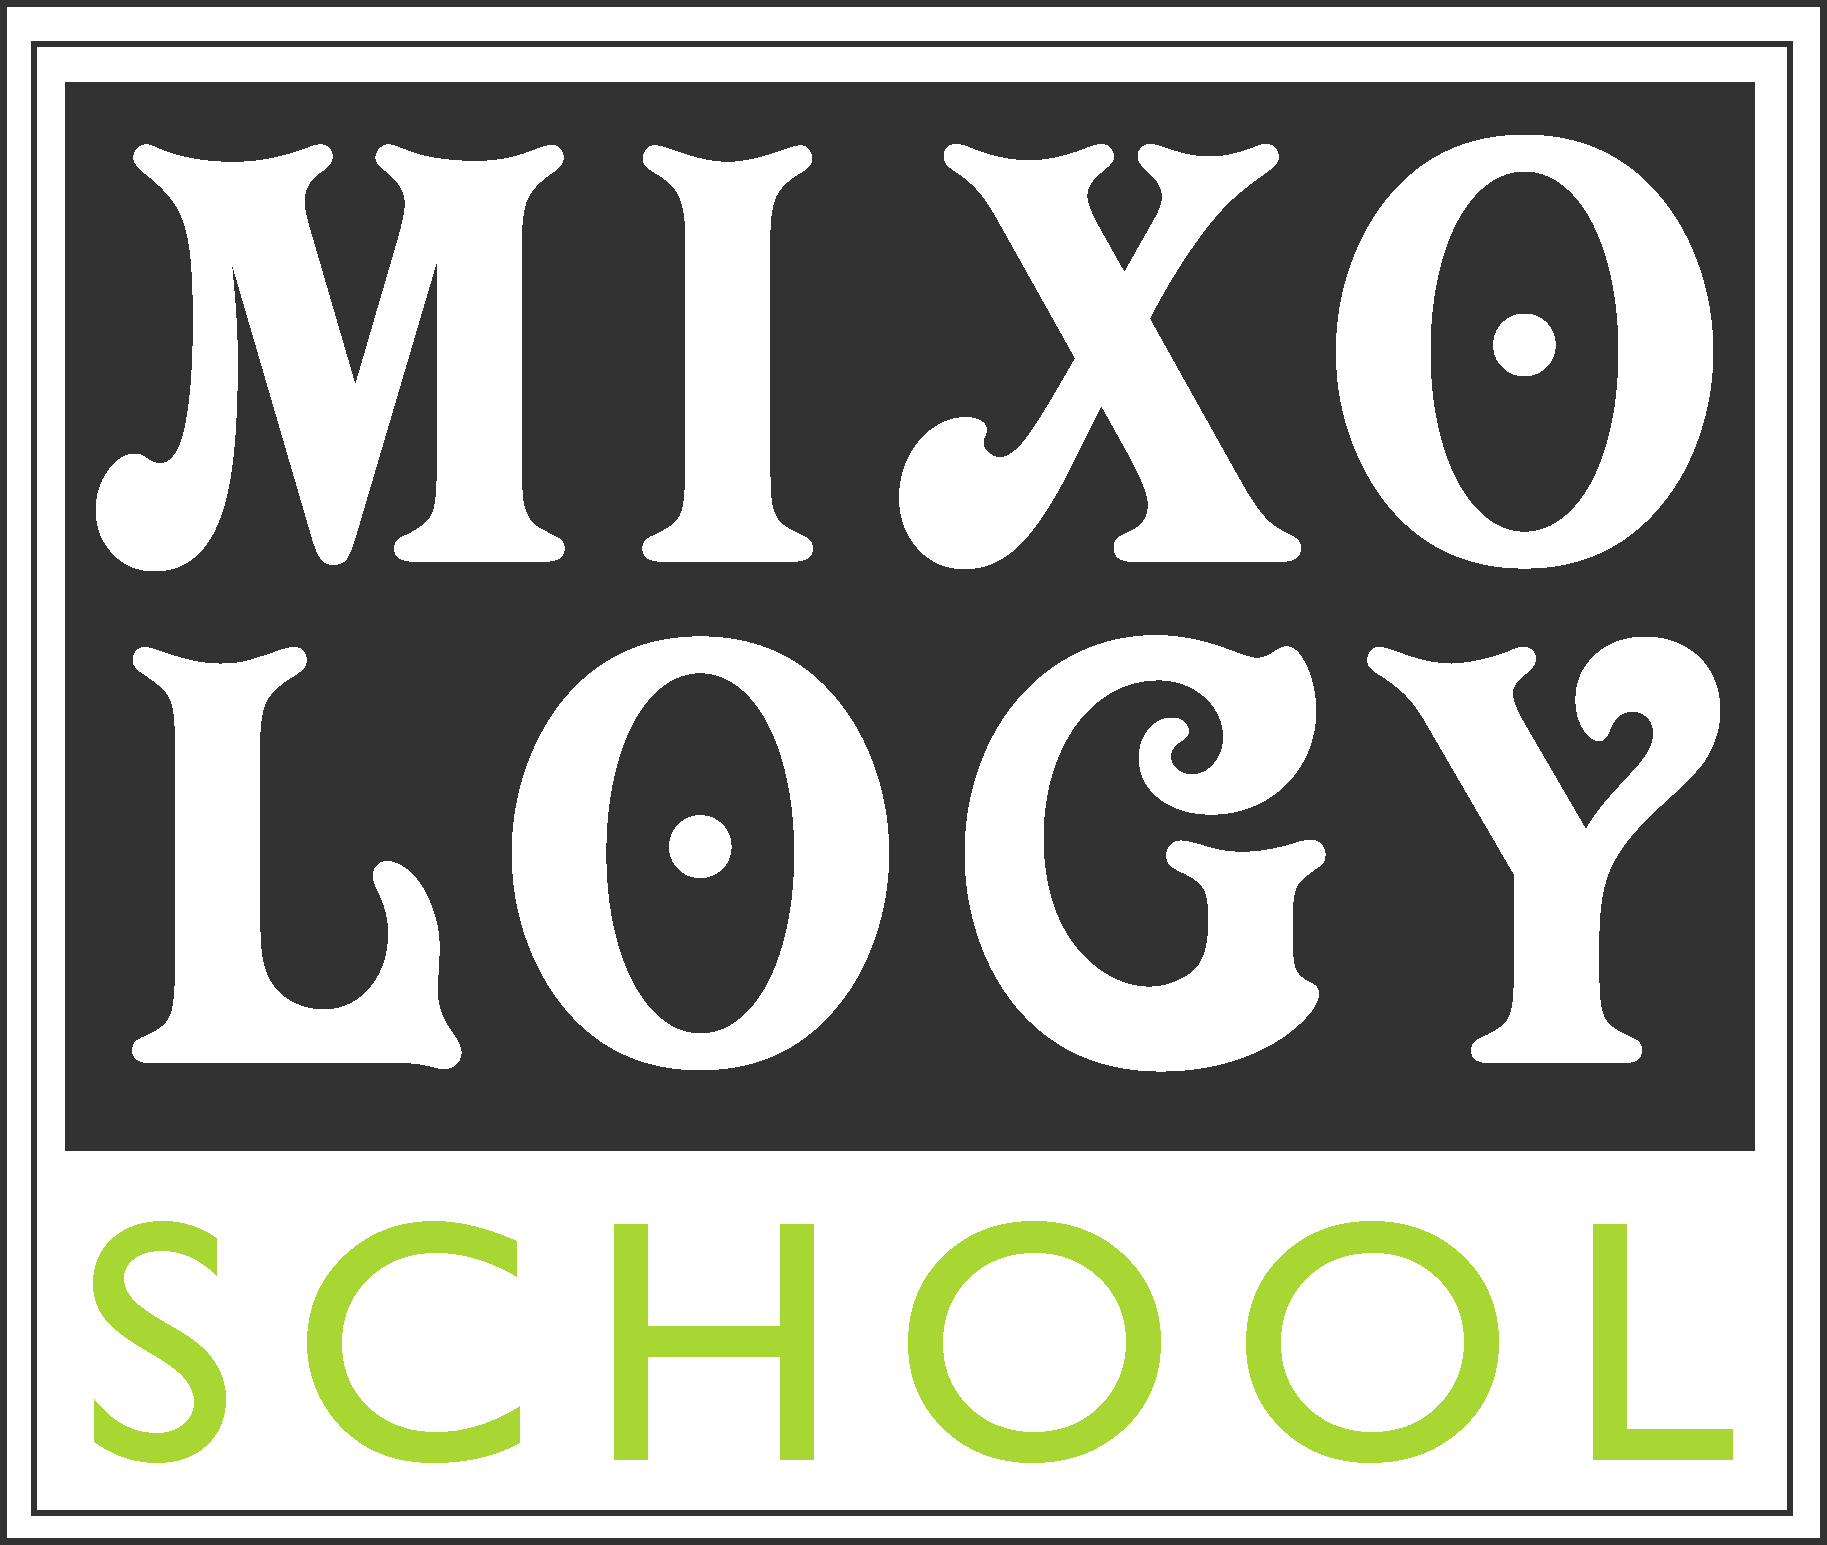 Mixology school